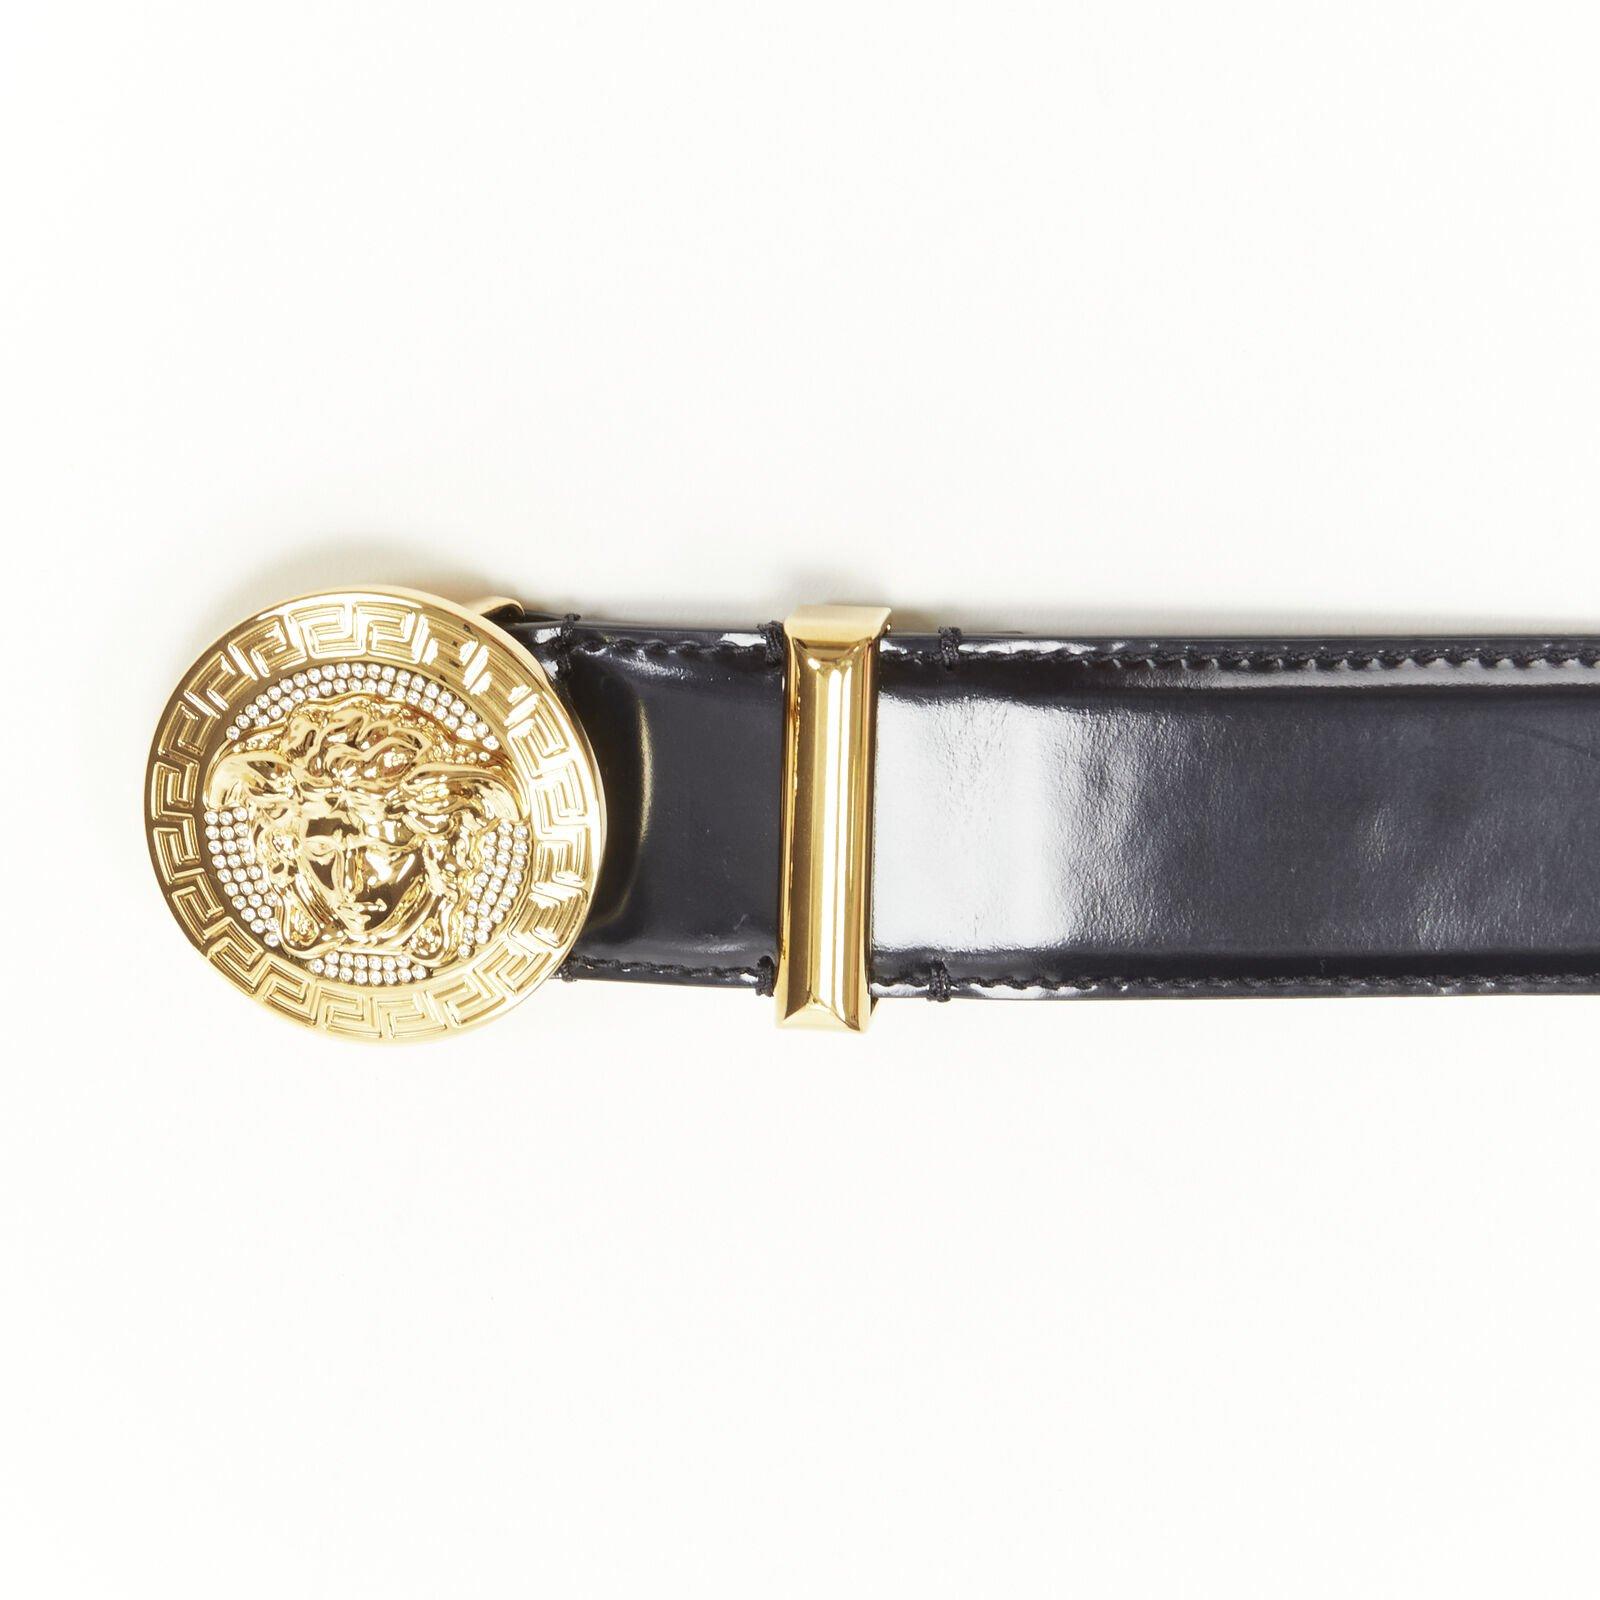 VERSACE Méduse  Médaillon en cristal doré pièce de monnaie ceinture en cuir noir 100cm 38-42